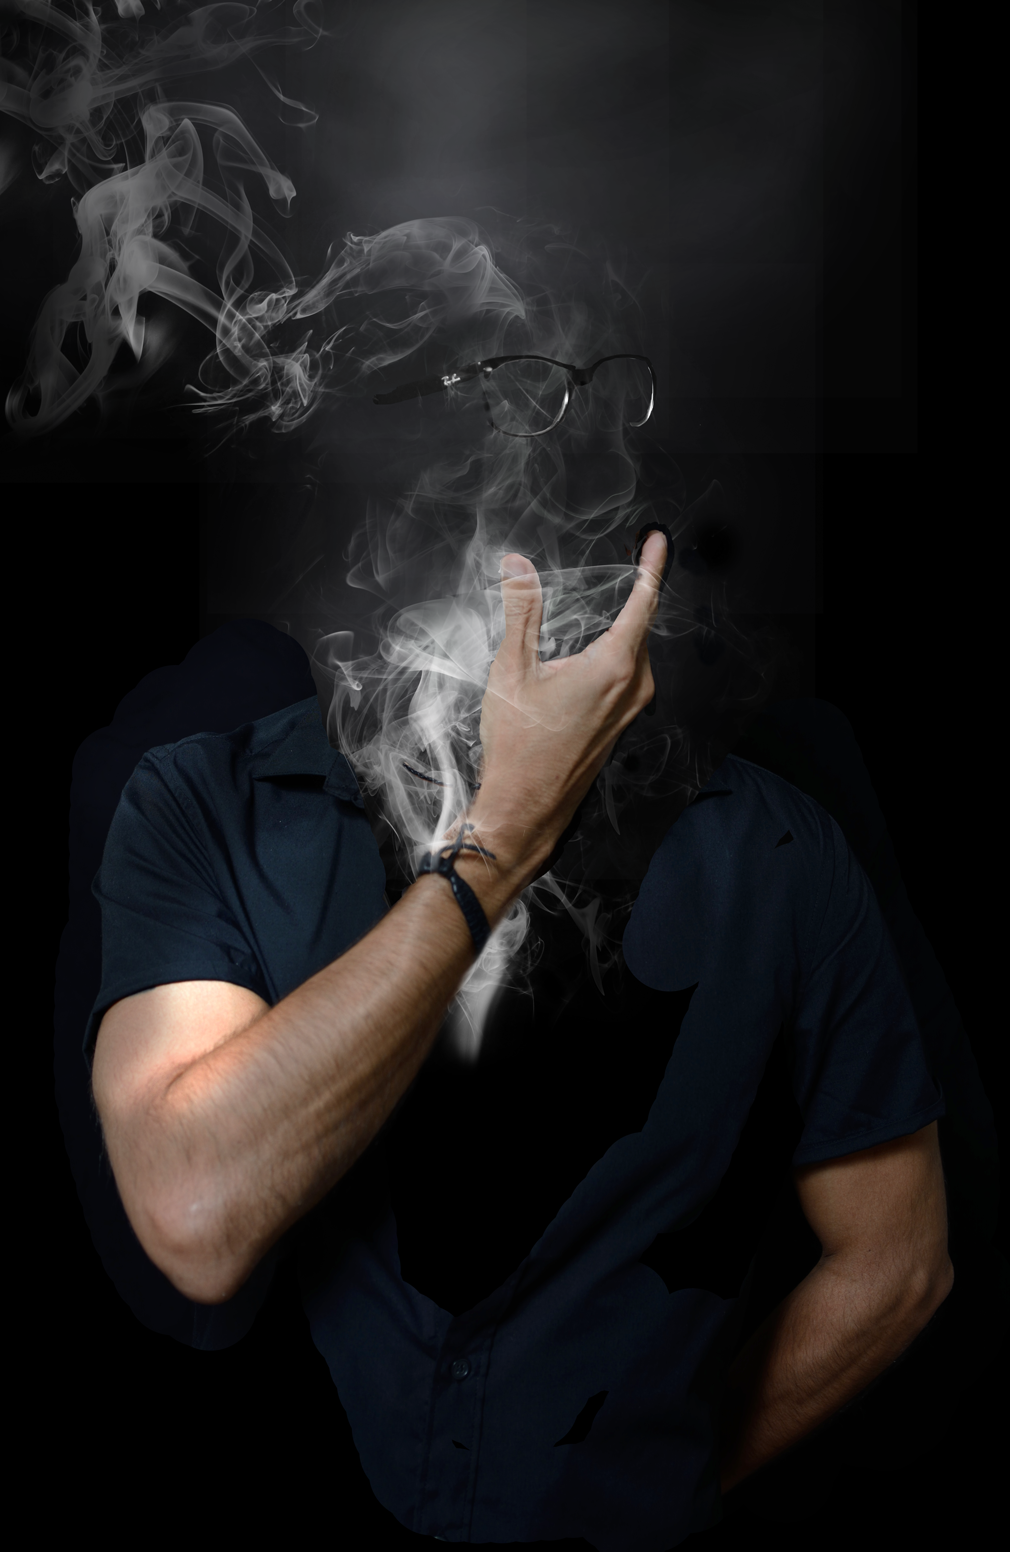 Картинки для ватсапа красивые для мужчины. Мужчина в дыму. Лицо в дыму. Мужской портрет с дымом. Мужское лицо в дыму.